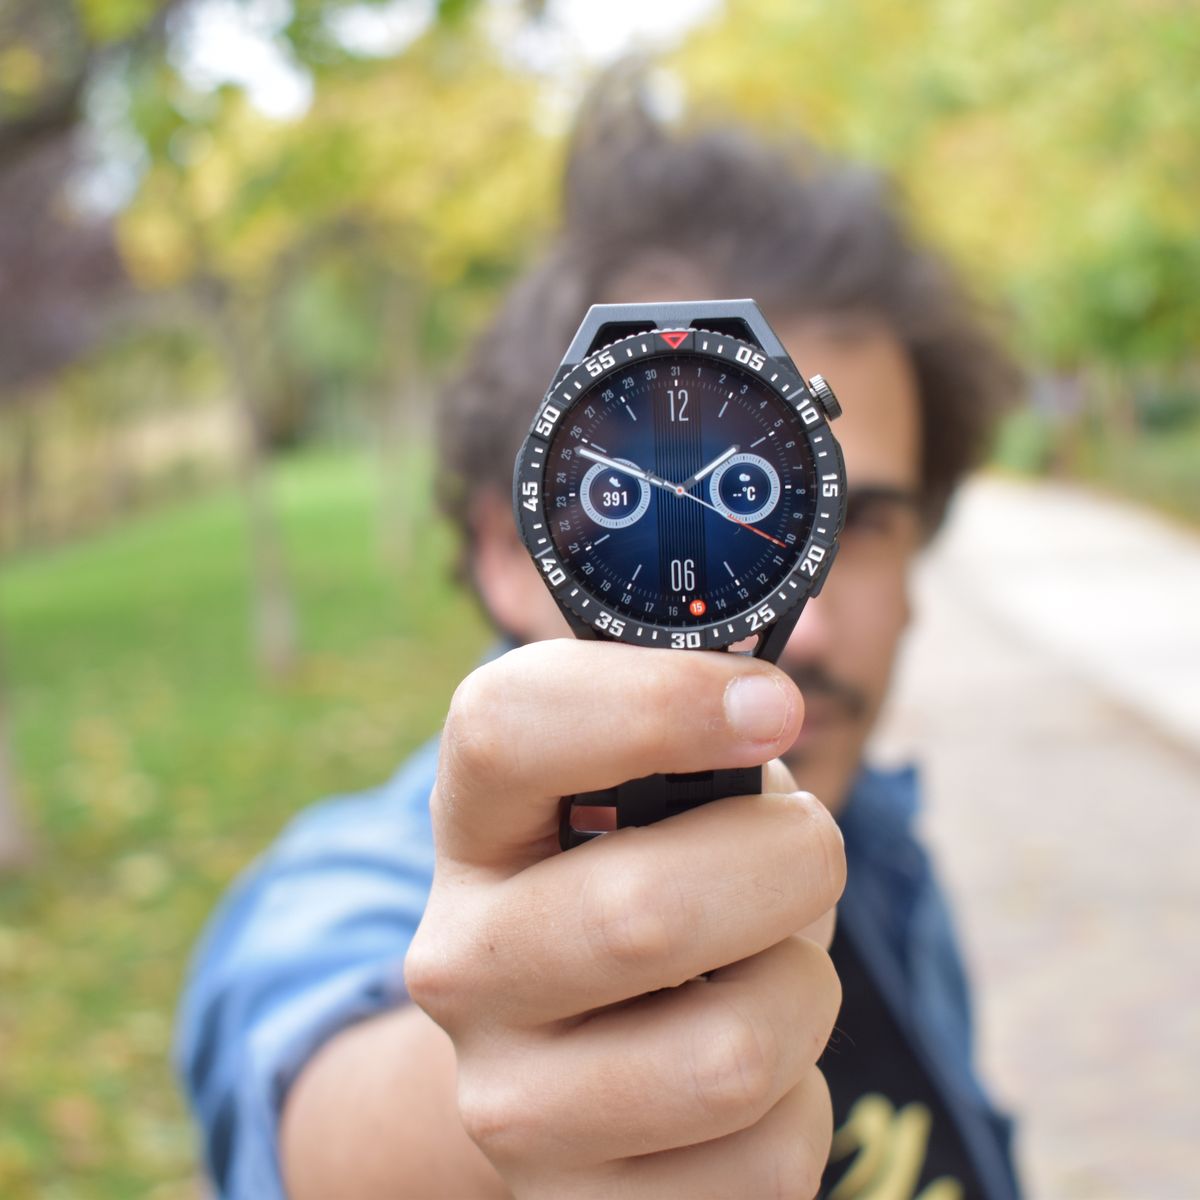 Análisis del Huawei Watch GT 2: un smartwatch muy completo con